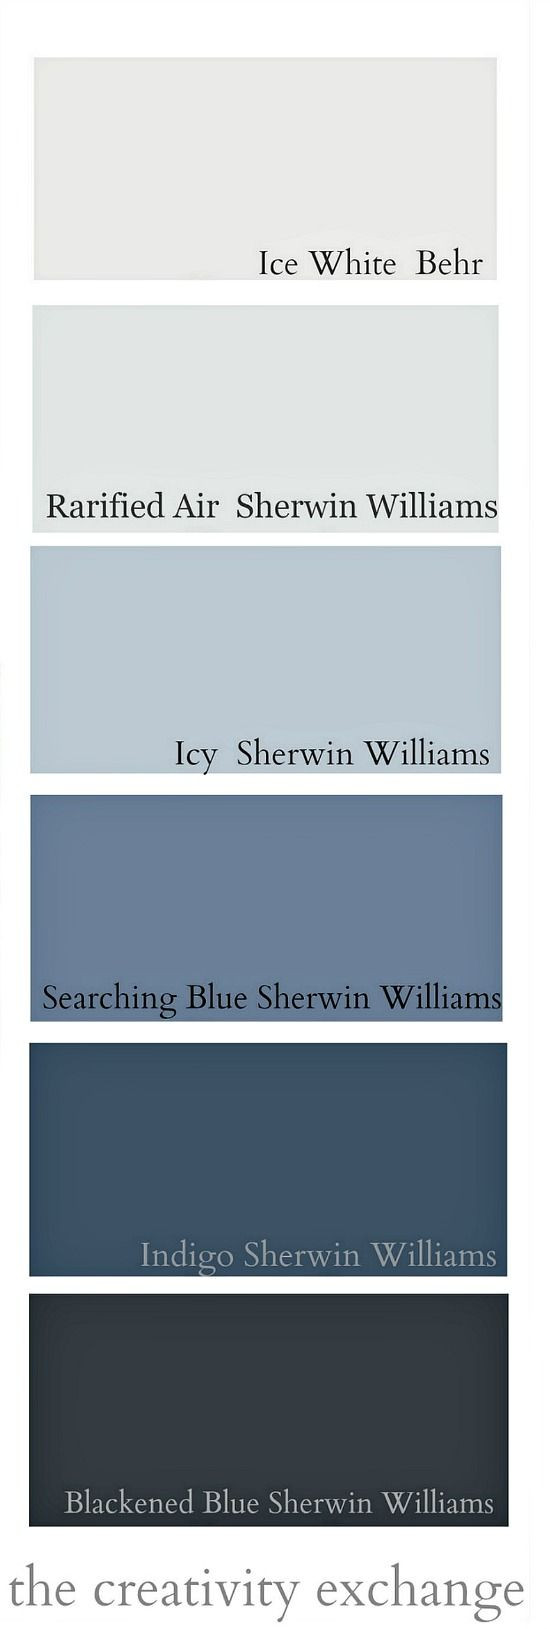 Best ideas about Blue Gray Paint Colors
. Save or Pin Best 25 Blue gray paint ideas only on Pinterest Now.